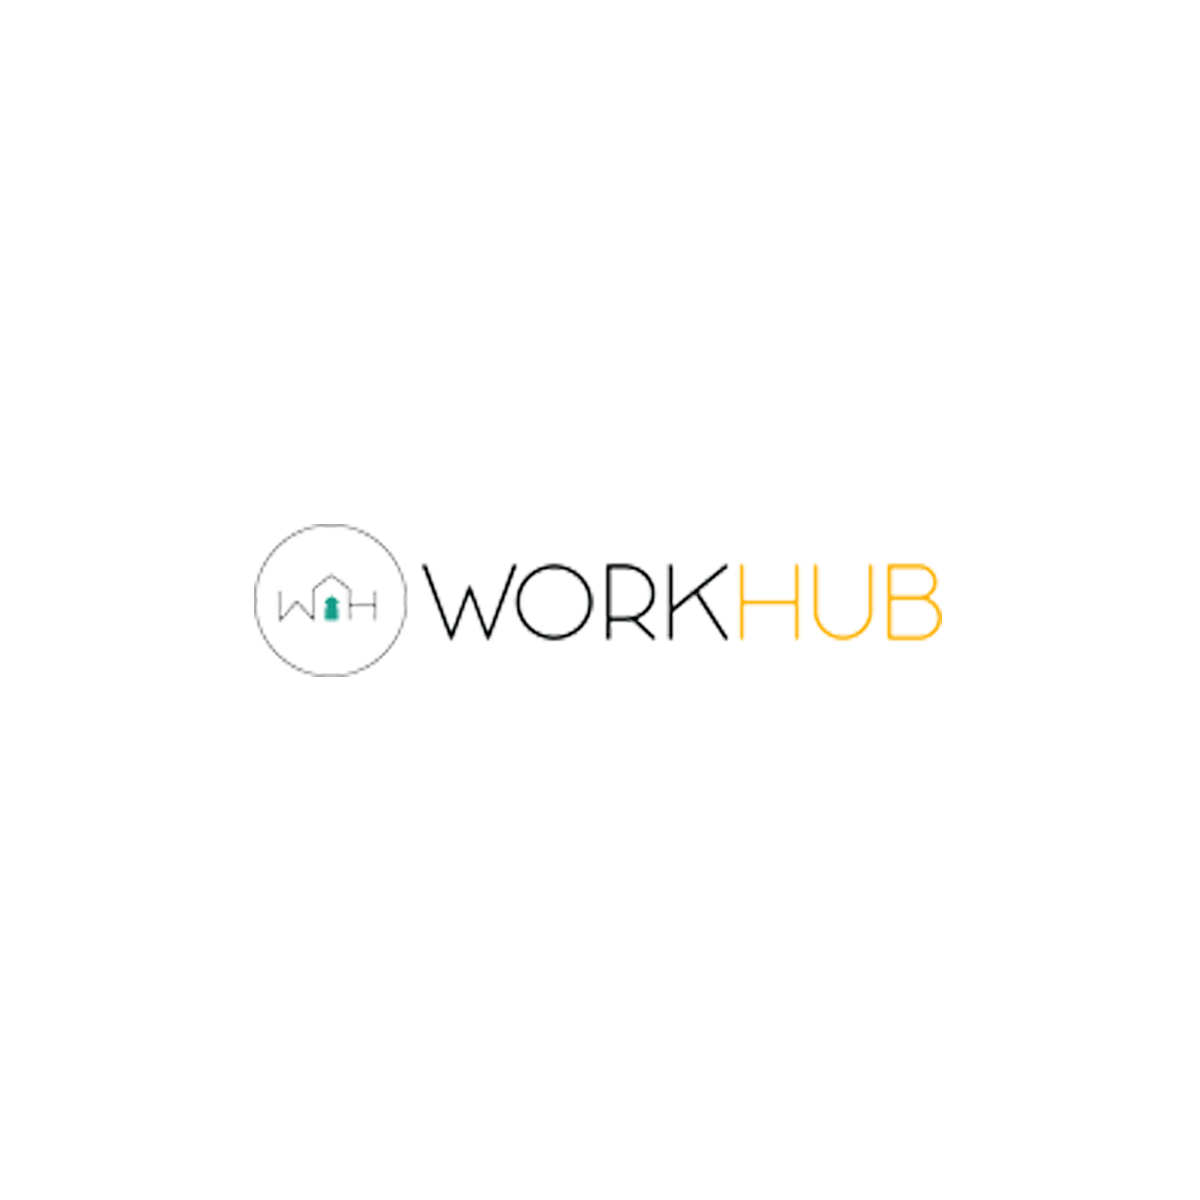 WorkHub